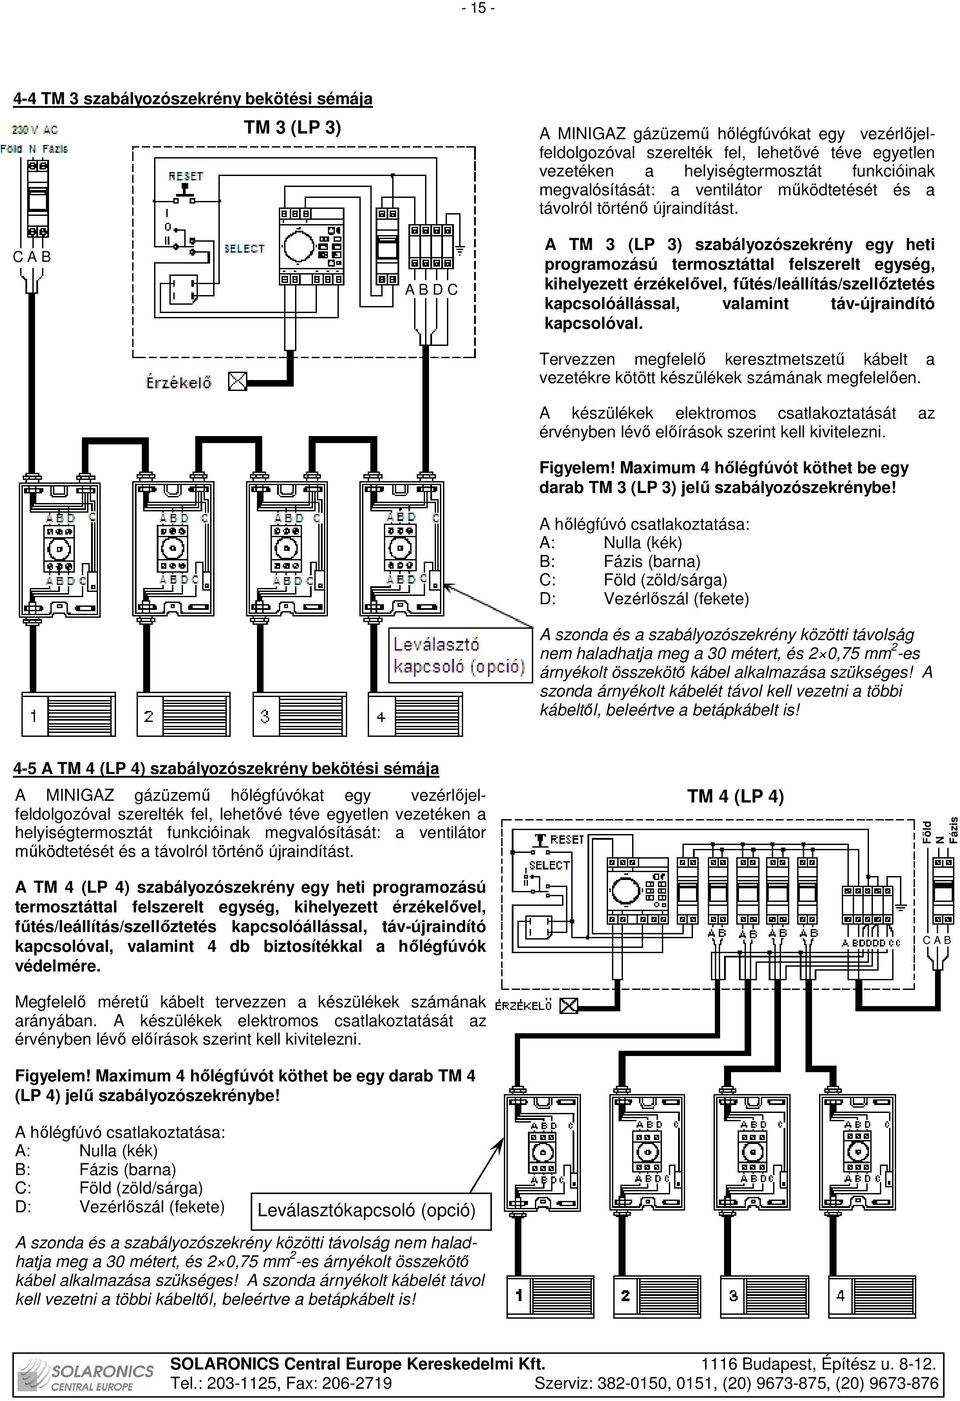 A TM 3 (LP 3) szabályozószekrény egy heti programozású termosztáttal felszerelt egység, kihelyezett érzékelıvel, főtés/leállítás/szellıztetés kapcsolóállással, valamint táv-újraindító kapcsolóval.